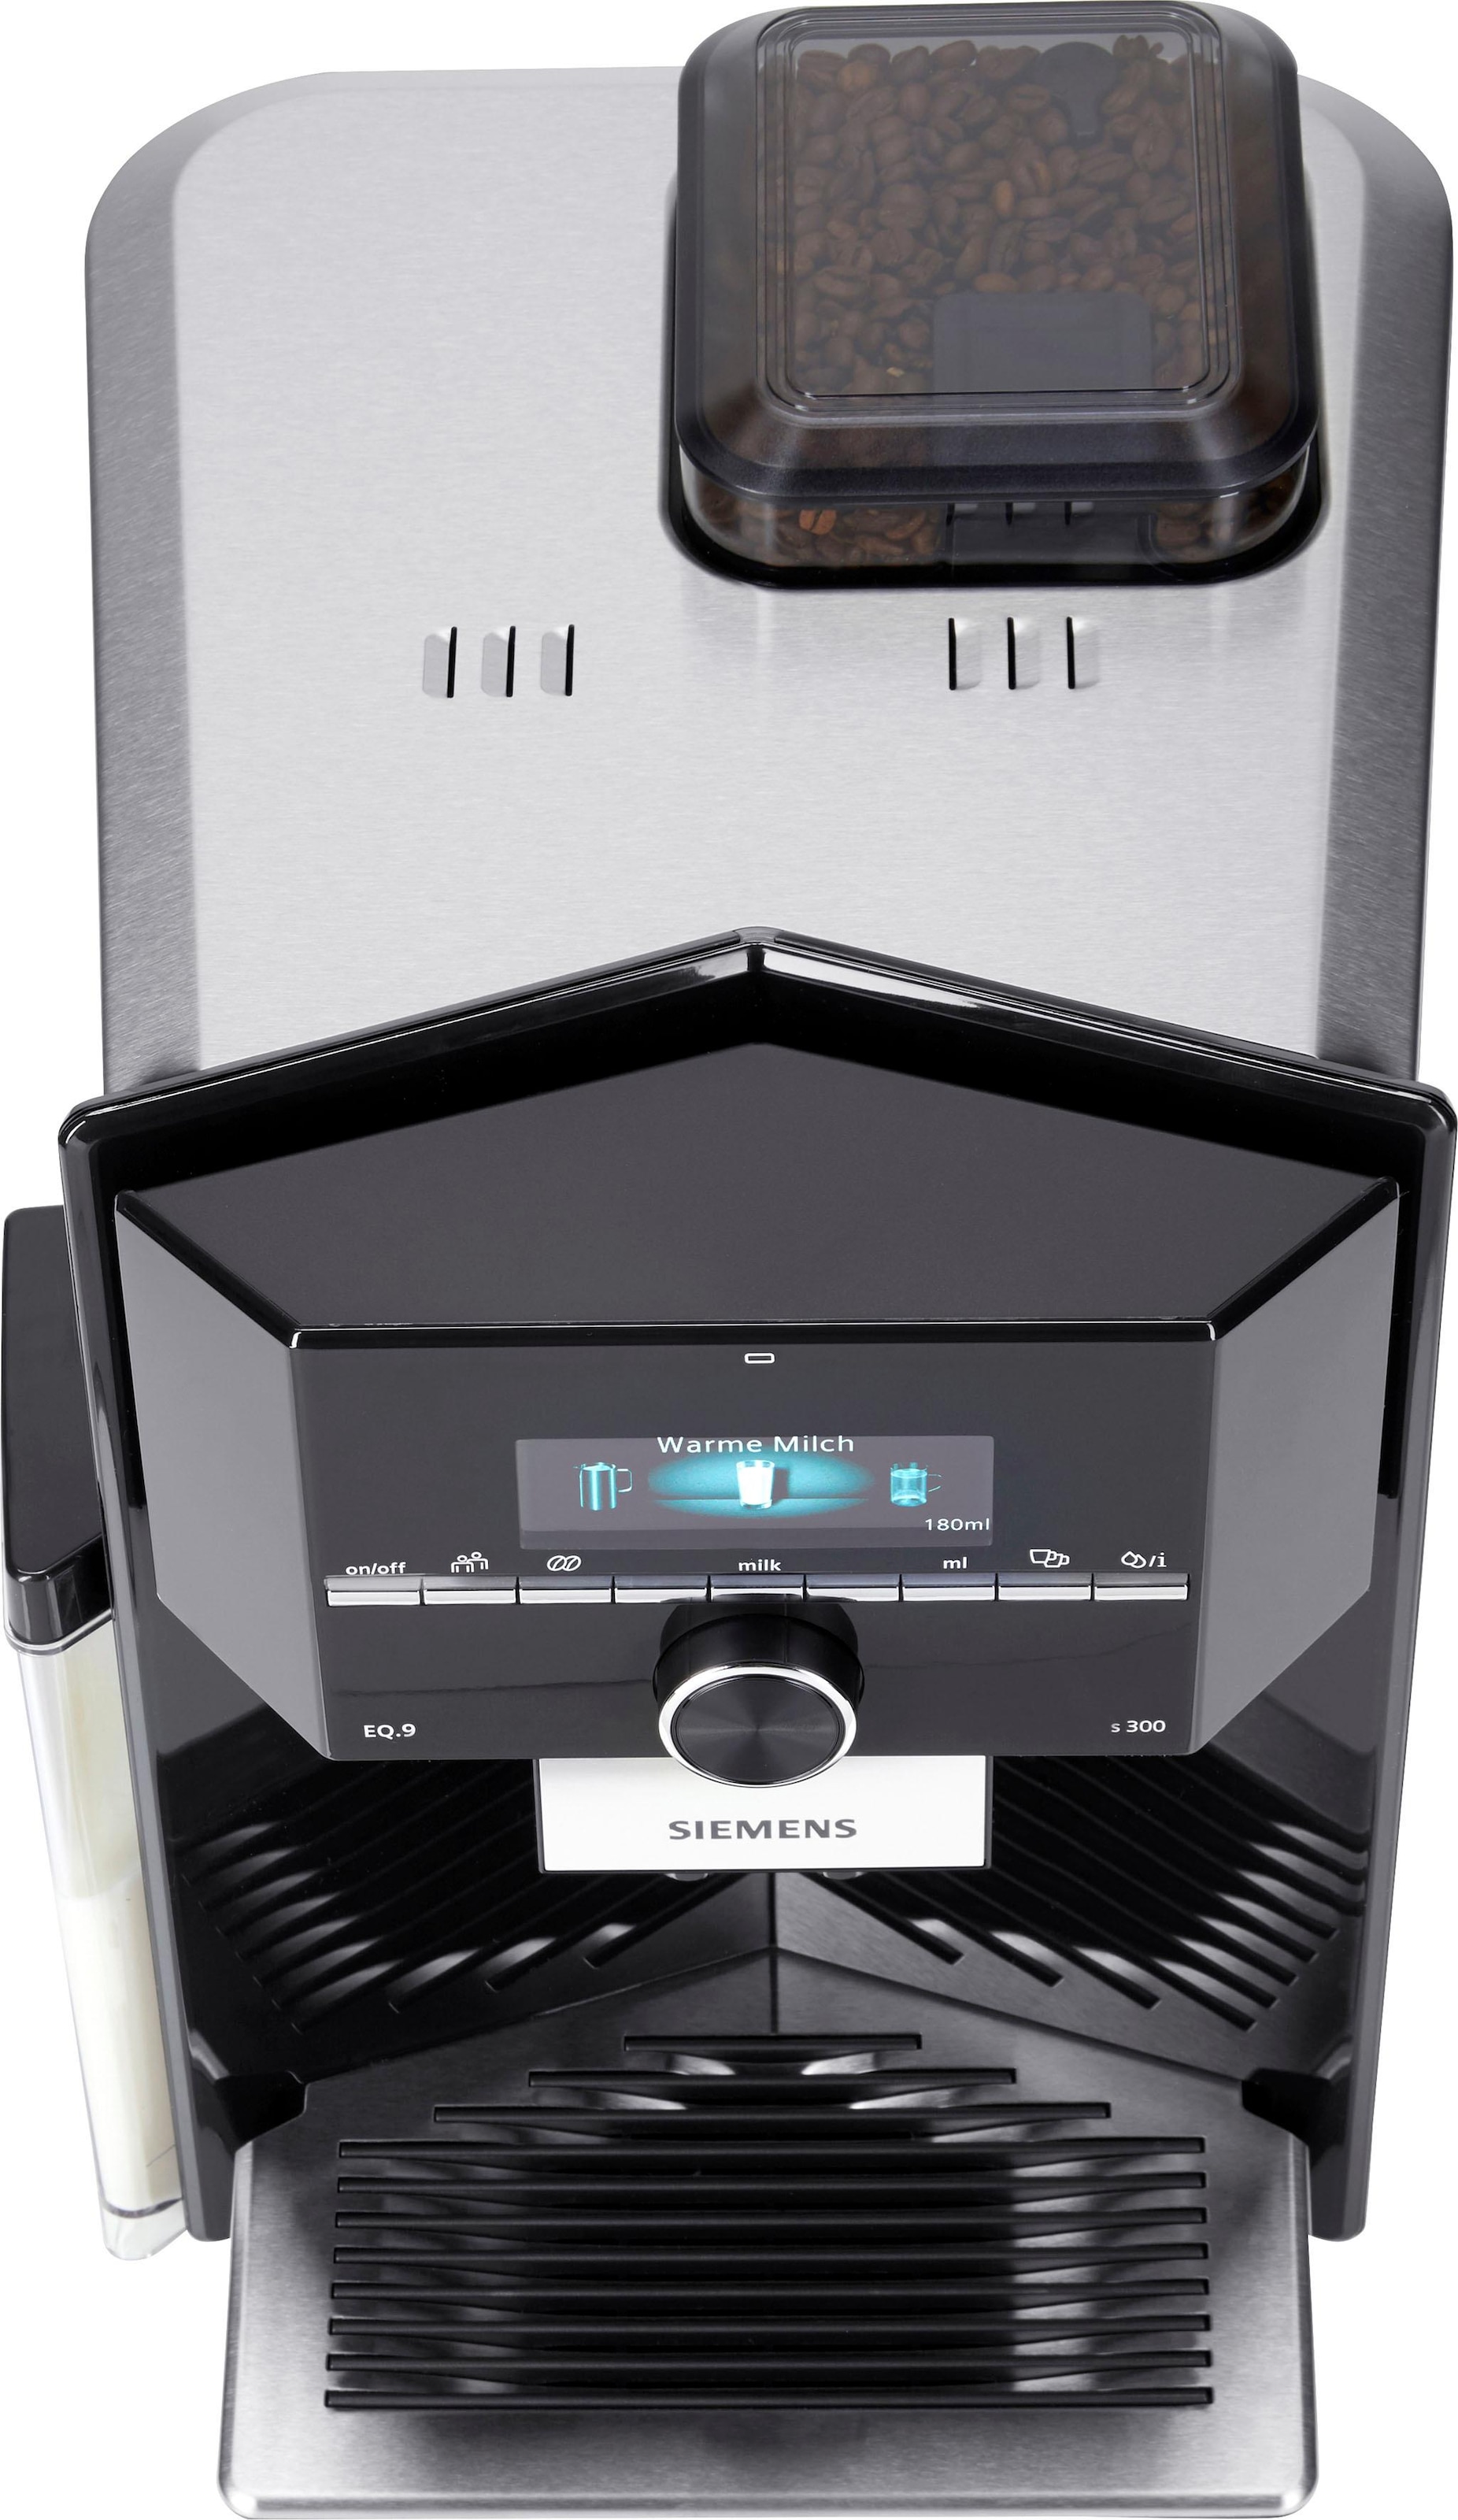 SIEMENS Kaffeevollautomat EQ.9 kaufen TI923509DE, Scheibenmahlwerk auf 2,3l Raten Tank, s300